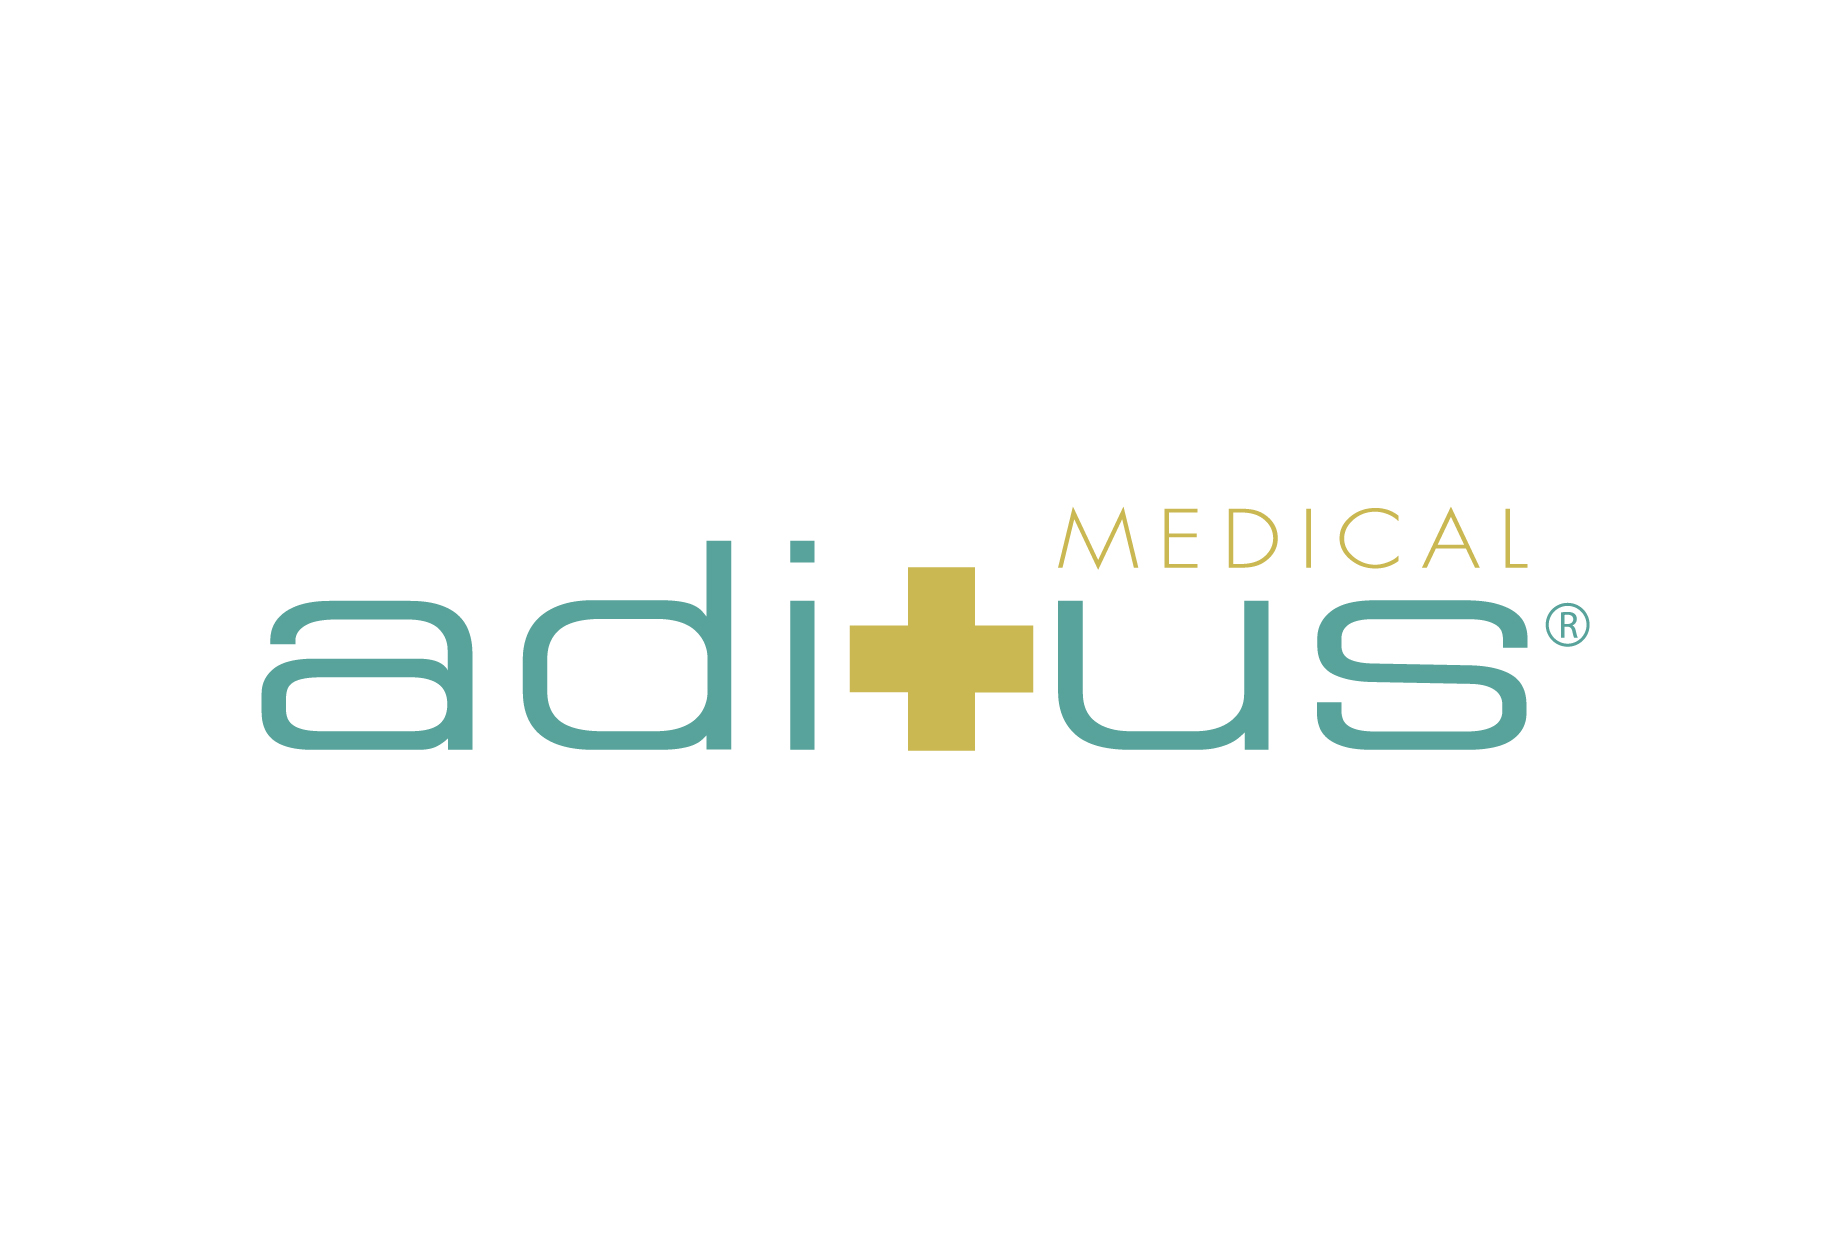 Aditus Medical GmbH logo